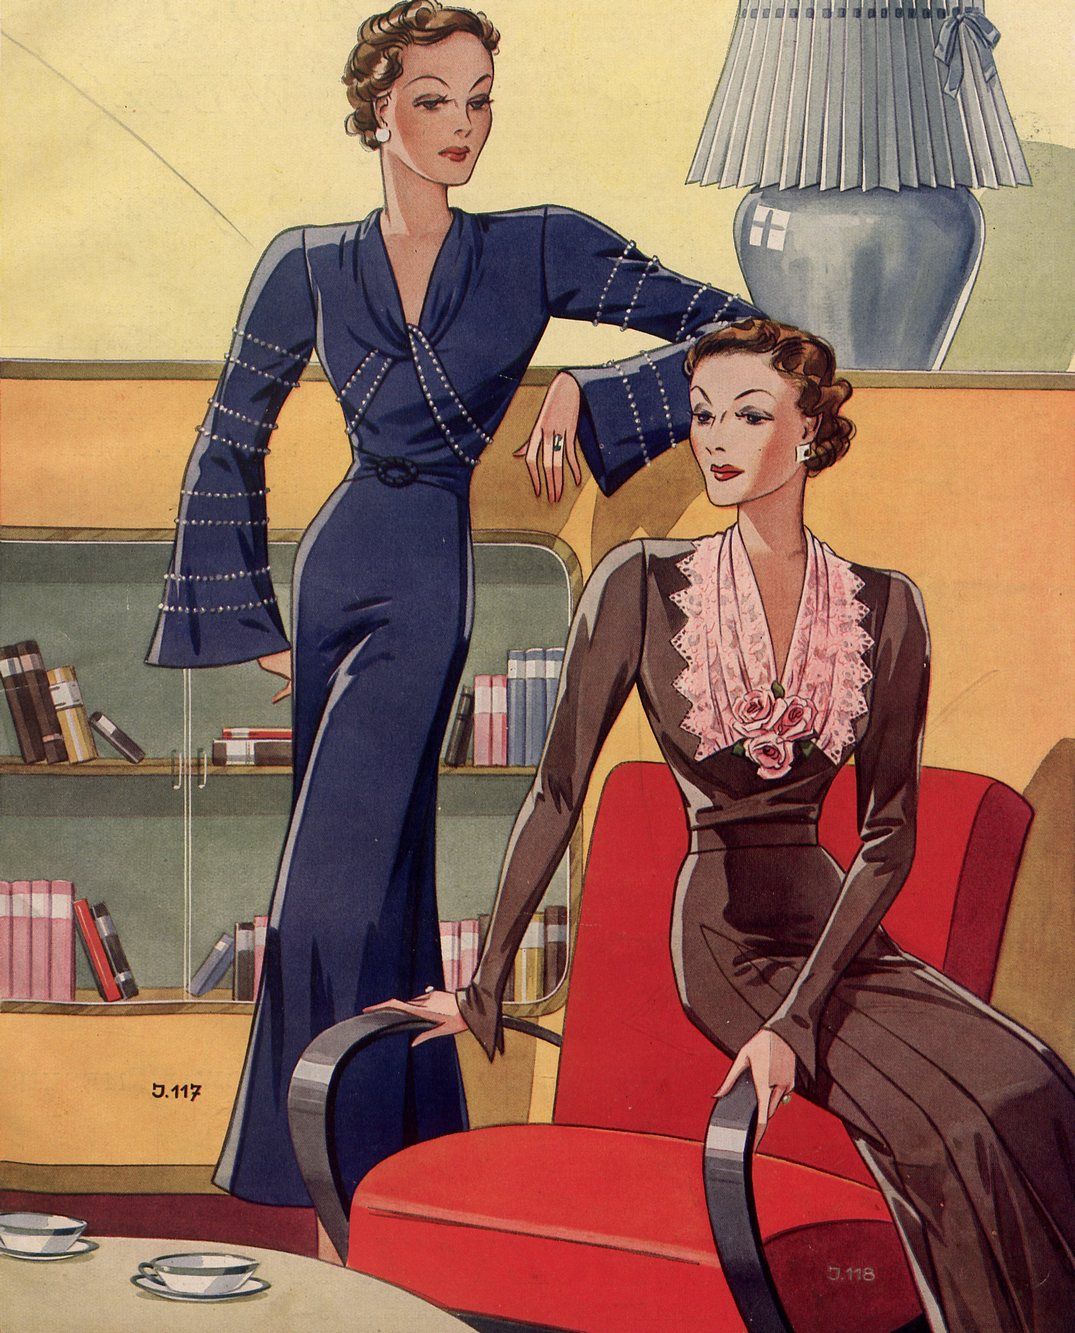 Spotkanie proszone wymagało odpowiedniej oprawy. Fragment okładki pisma "Przegląd mody" z 1937 roku.